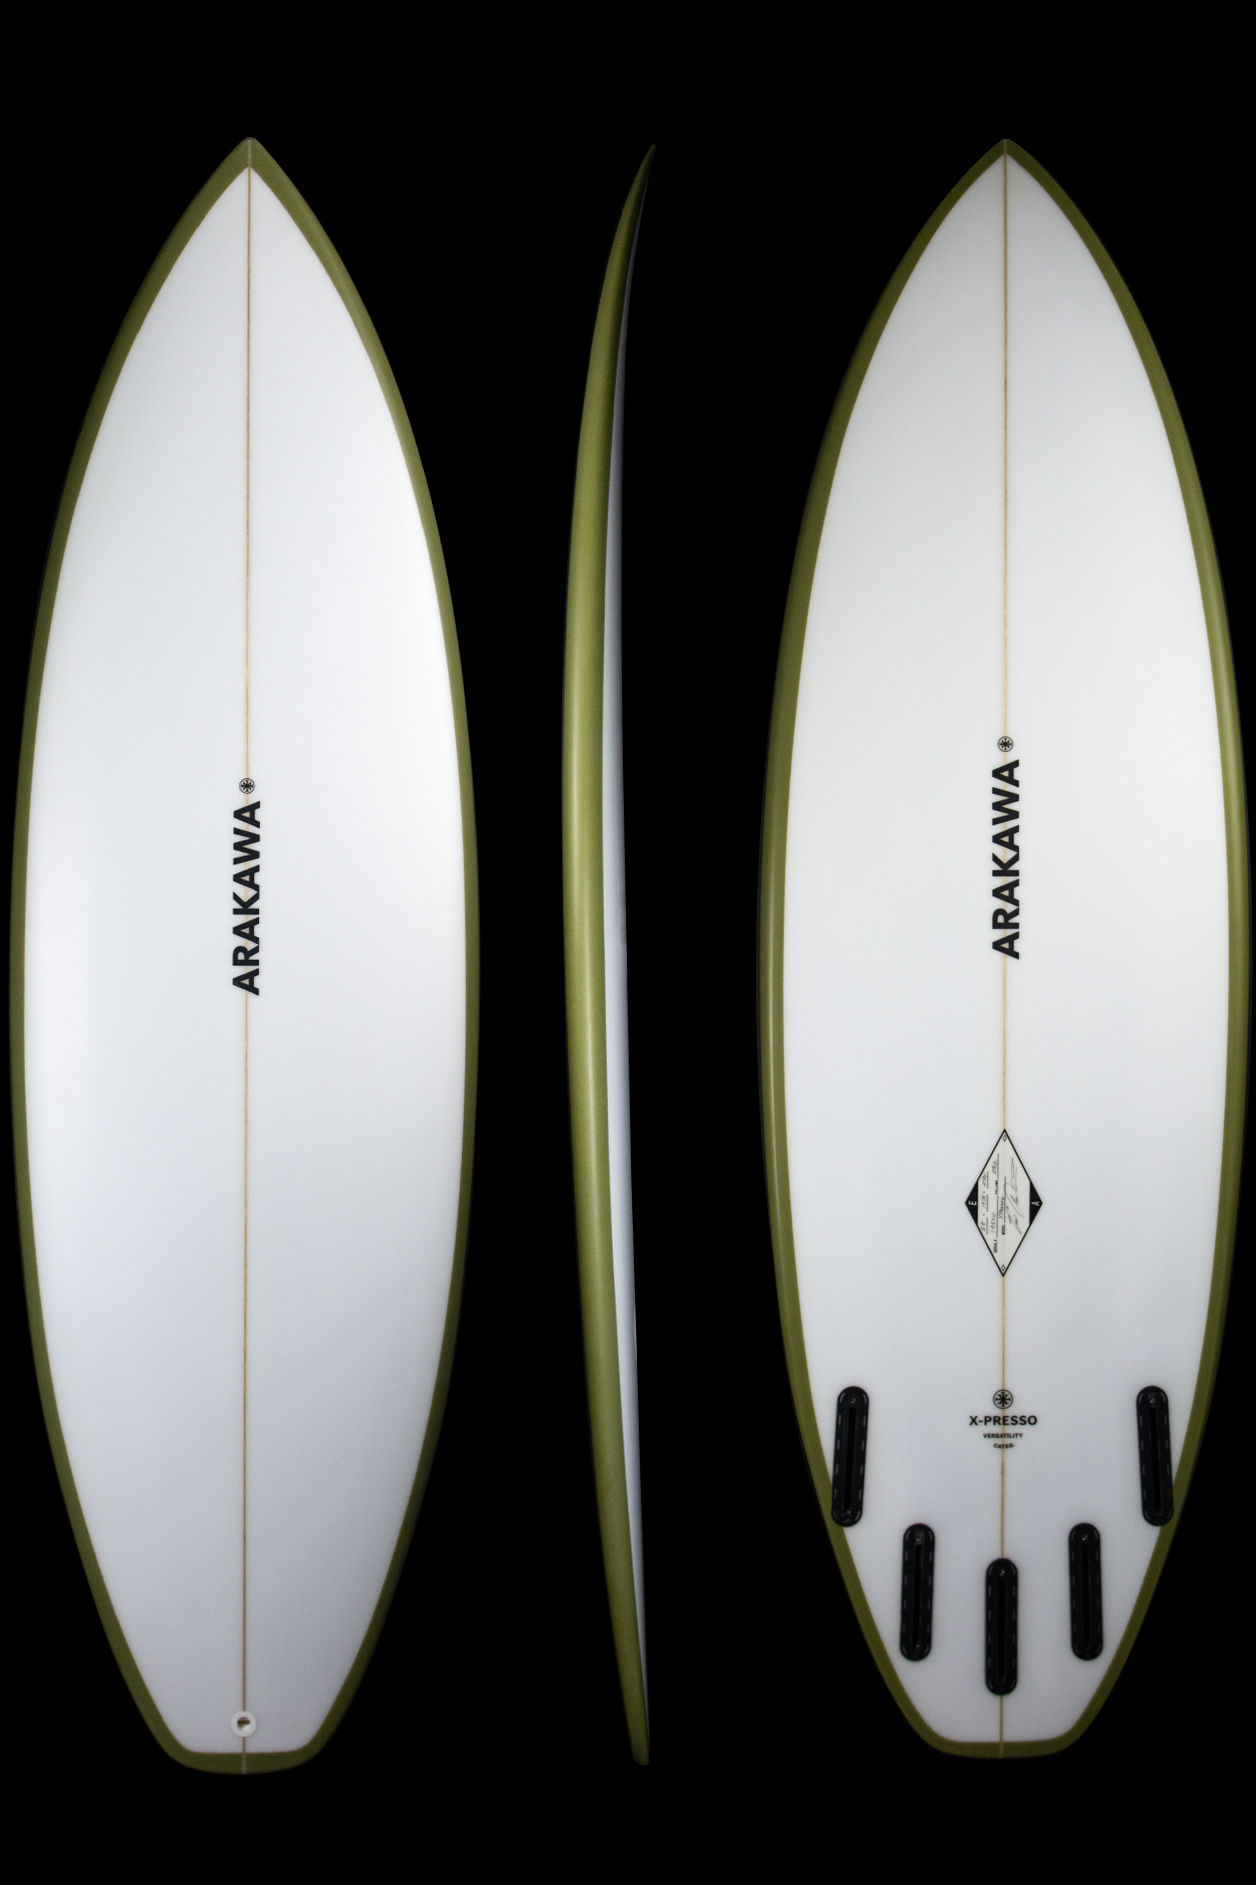 X-Presso | Arakawa Surfboards